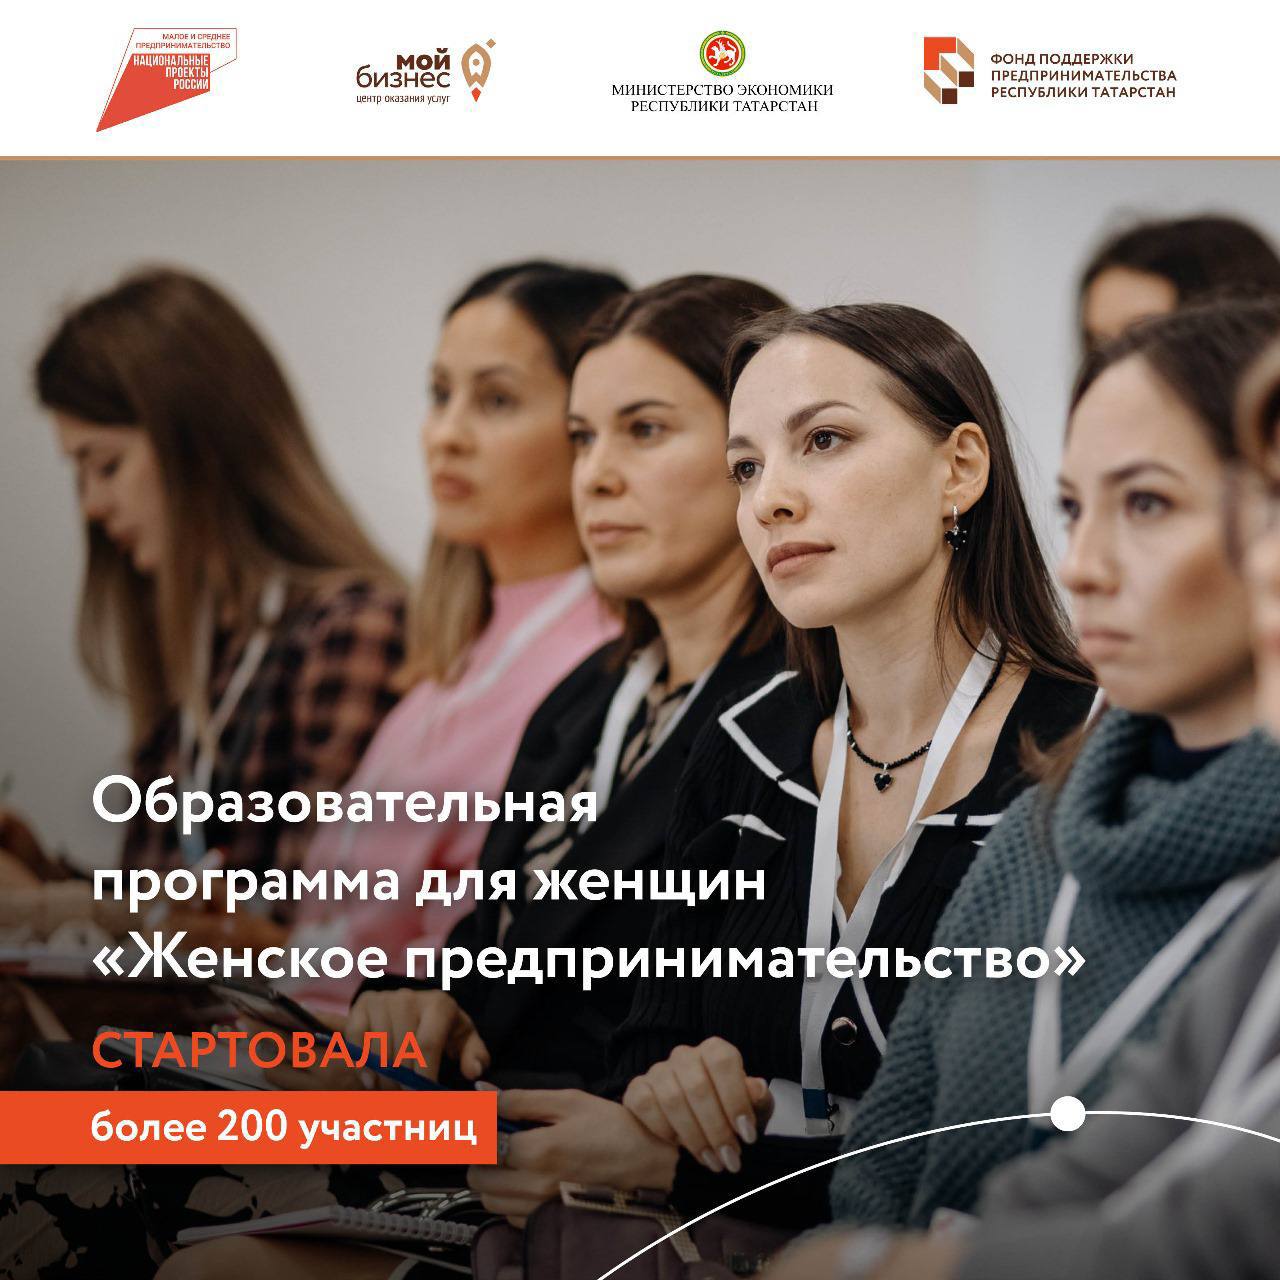 Свыше 200 женщин в Татарстане пройдут обучение по ведению бизнеса.